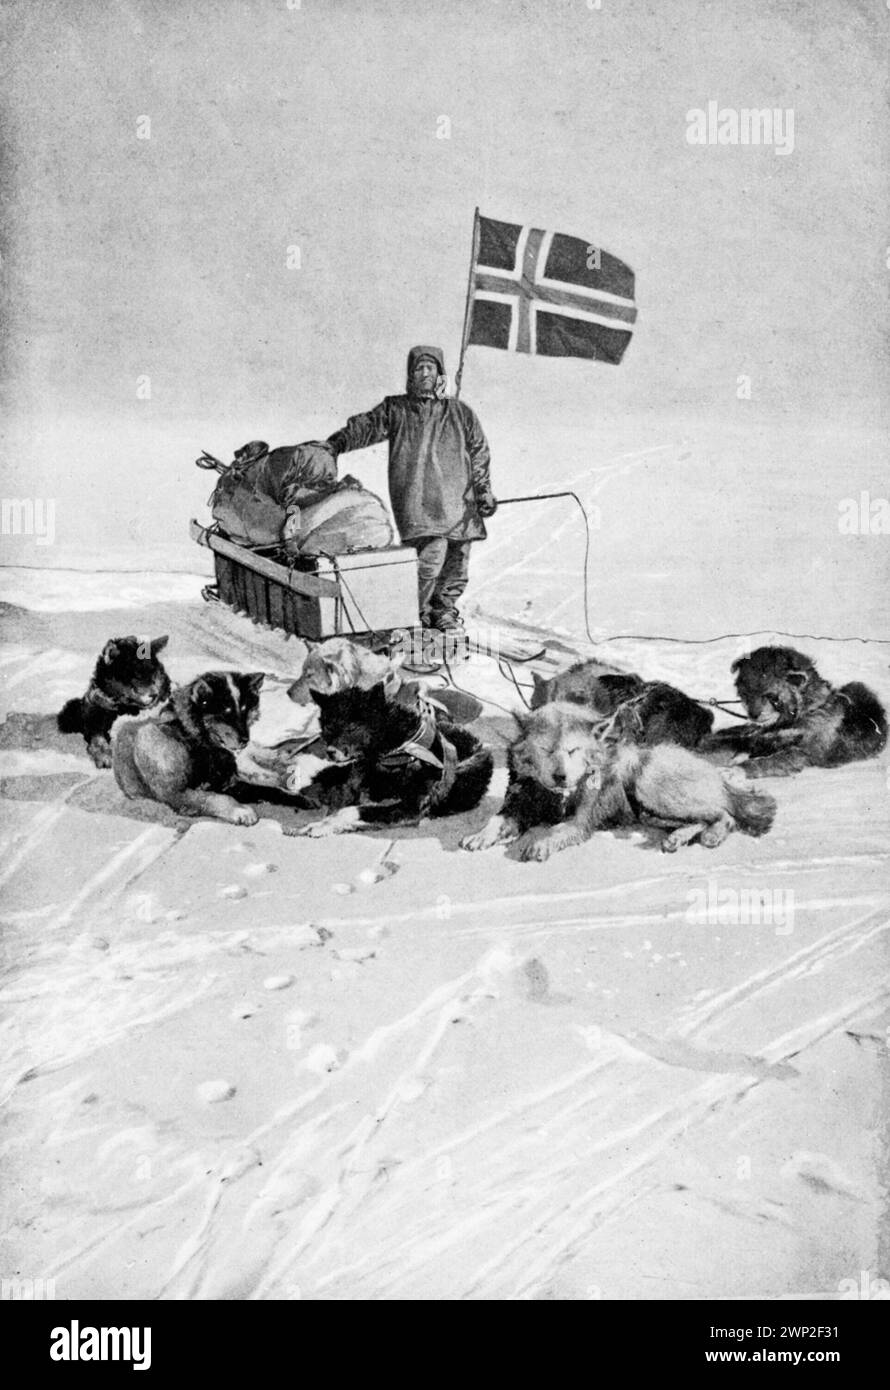 Dezember 1911. Am Südpol: Oscar Wisting, ein Teil der Roald Amundsen Polar Expedition, kommt mit ihren Hunden am Südpol an und pflanzt die Norwegische Flagge. Stockfoto